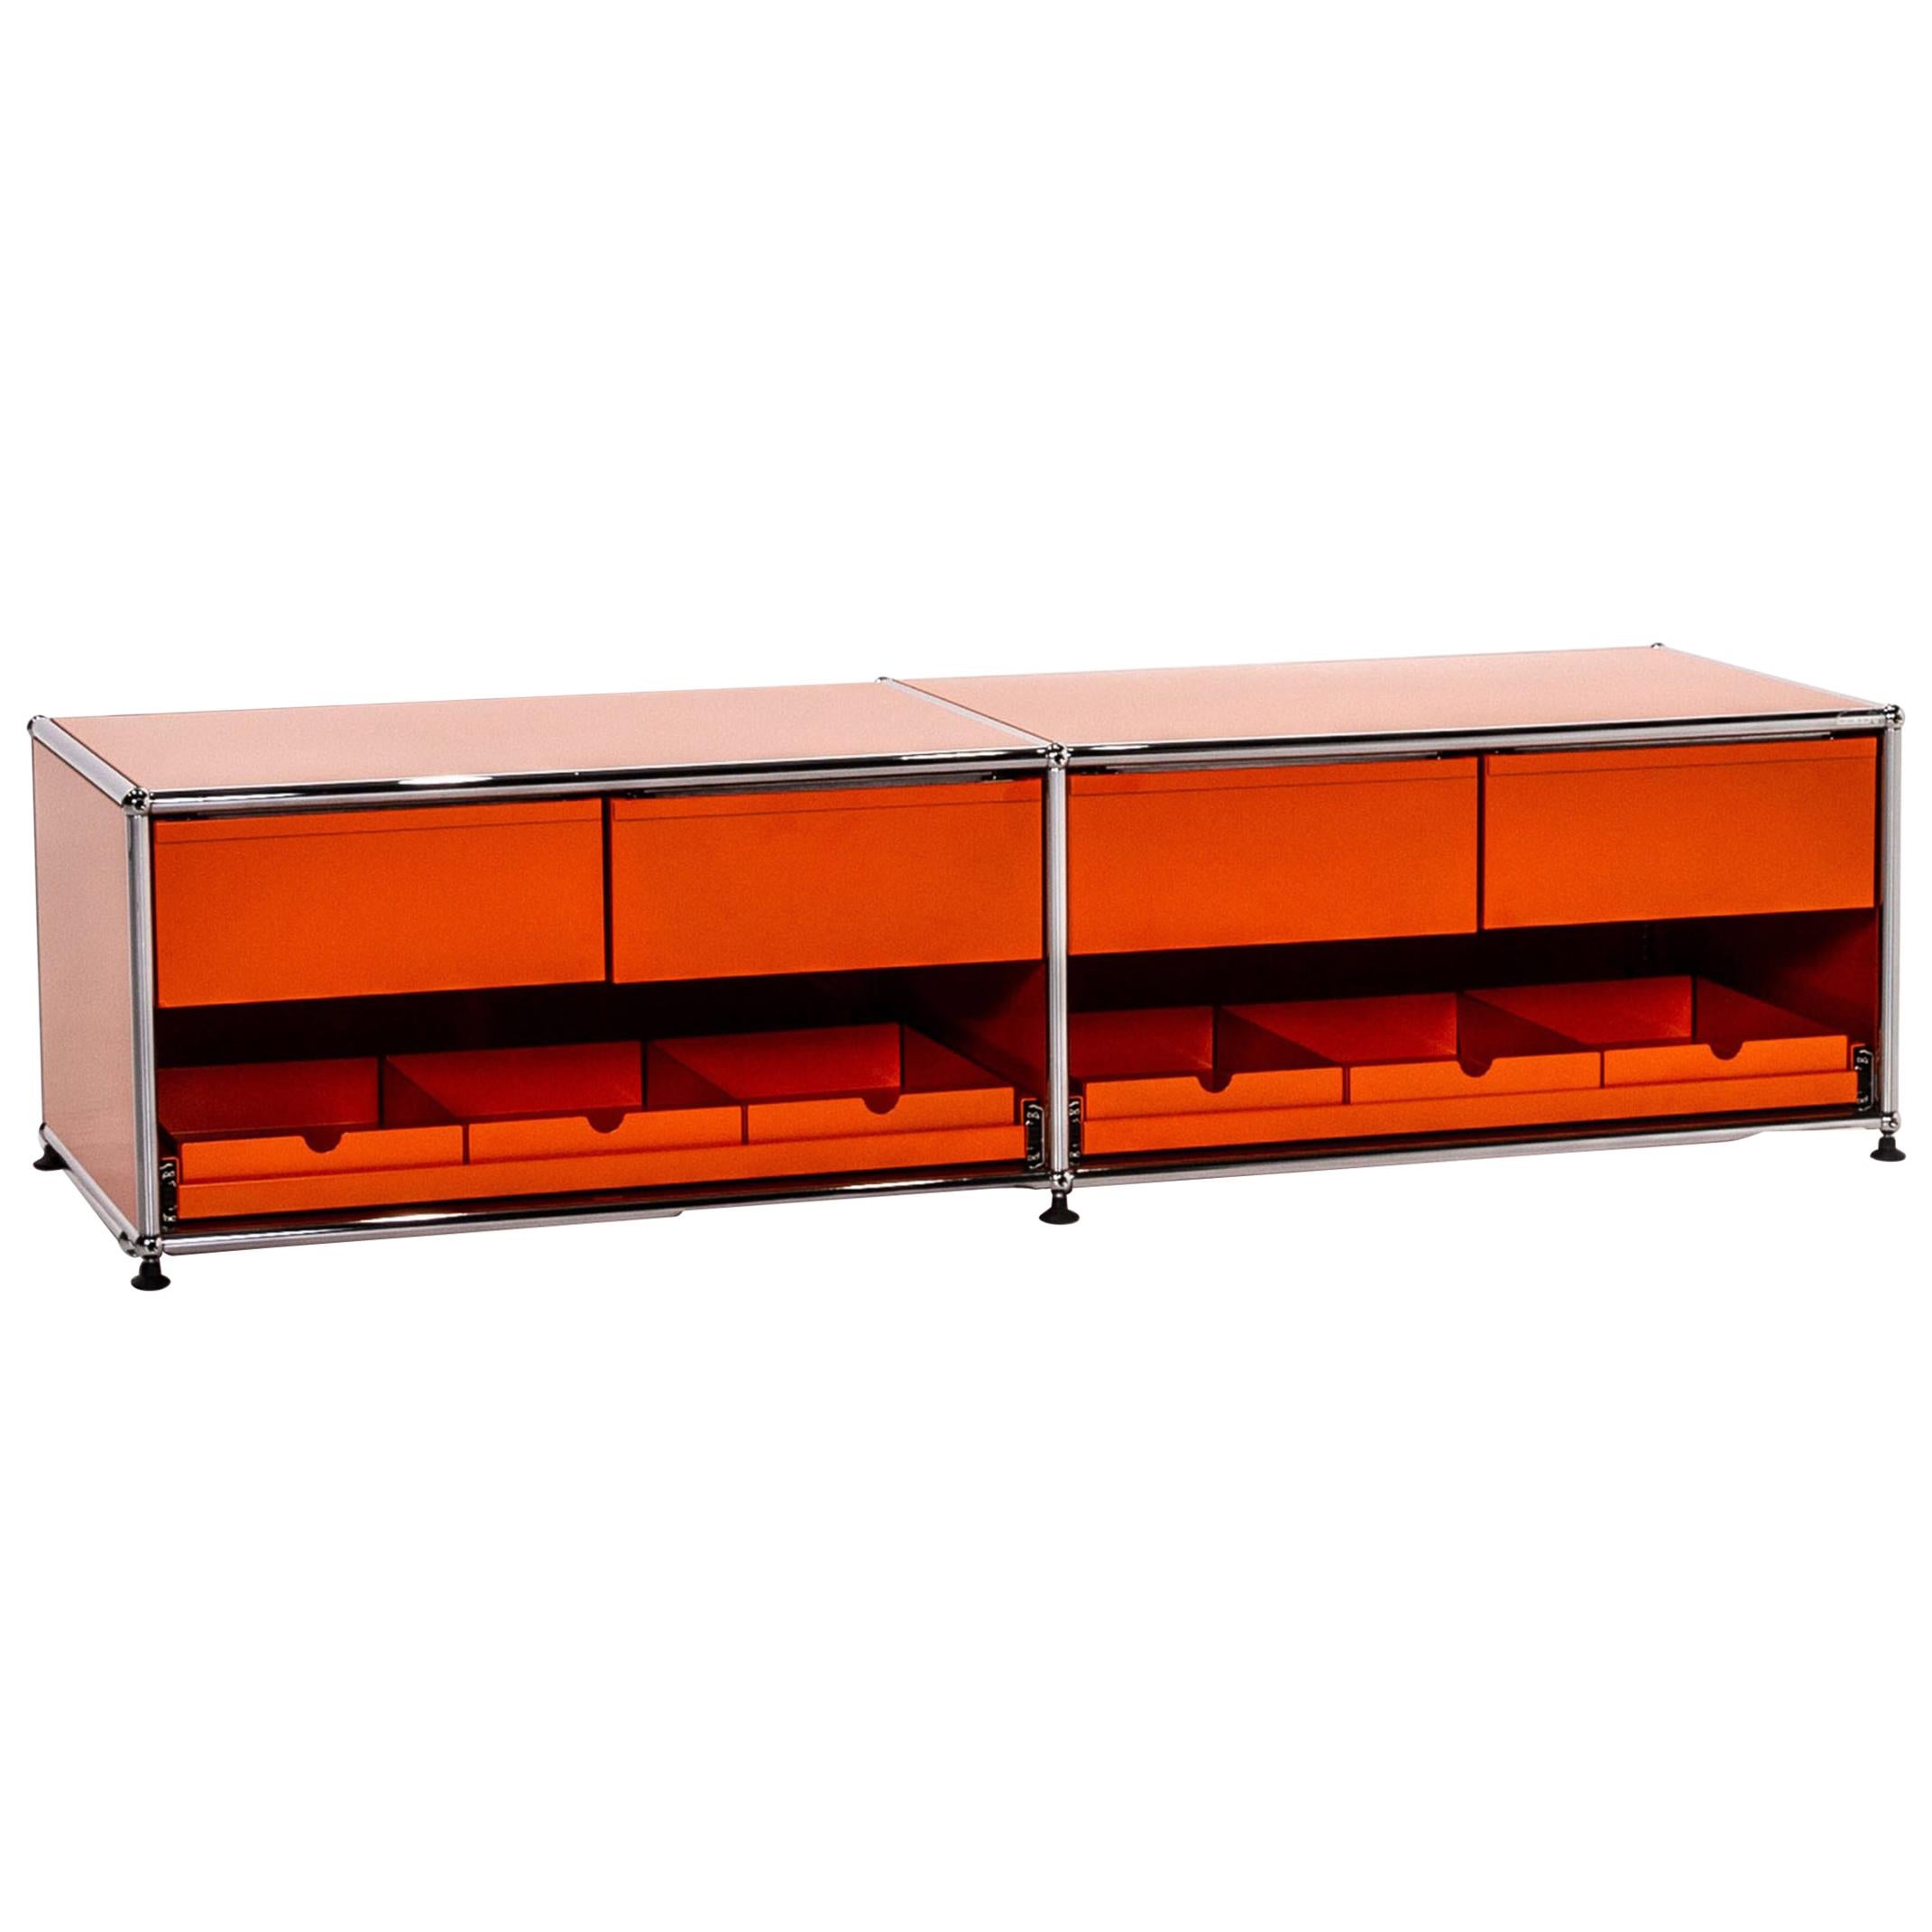 USM Haller Metal Sideboard Orange Office Furniture Lowboard Modular